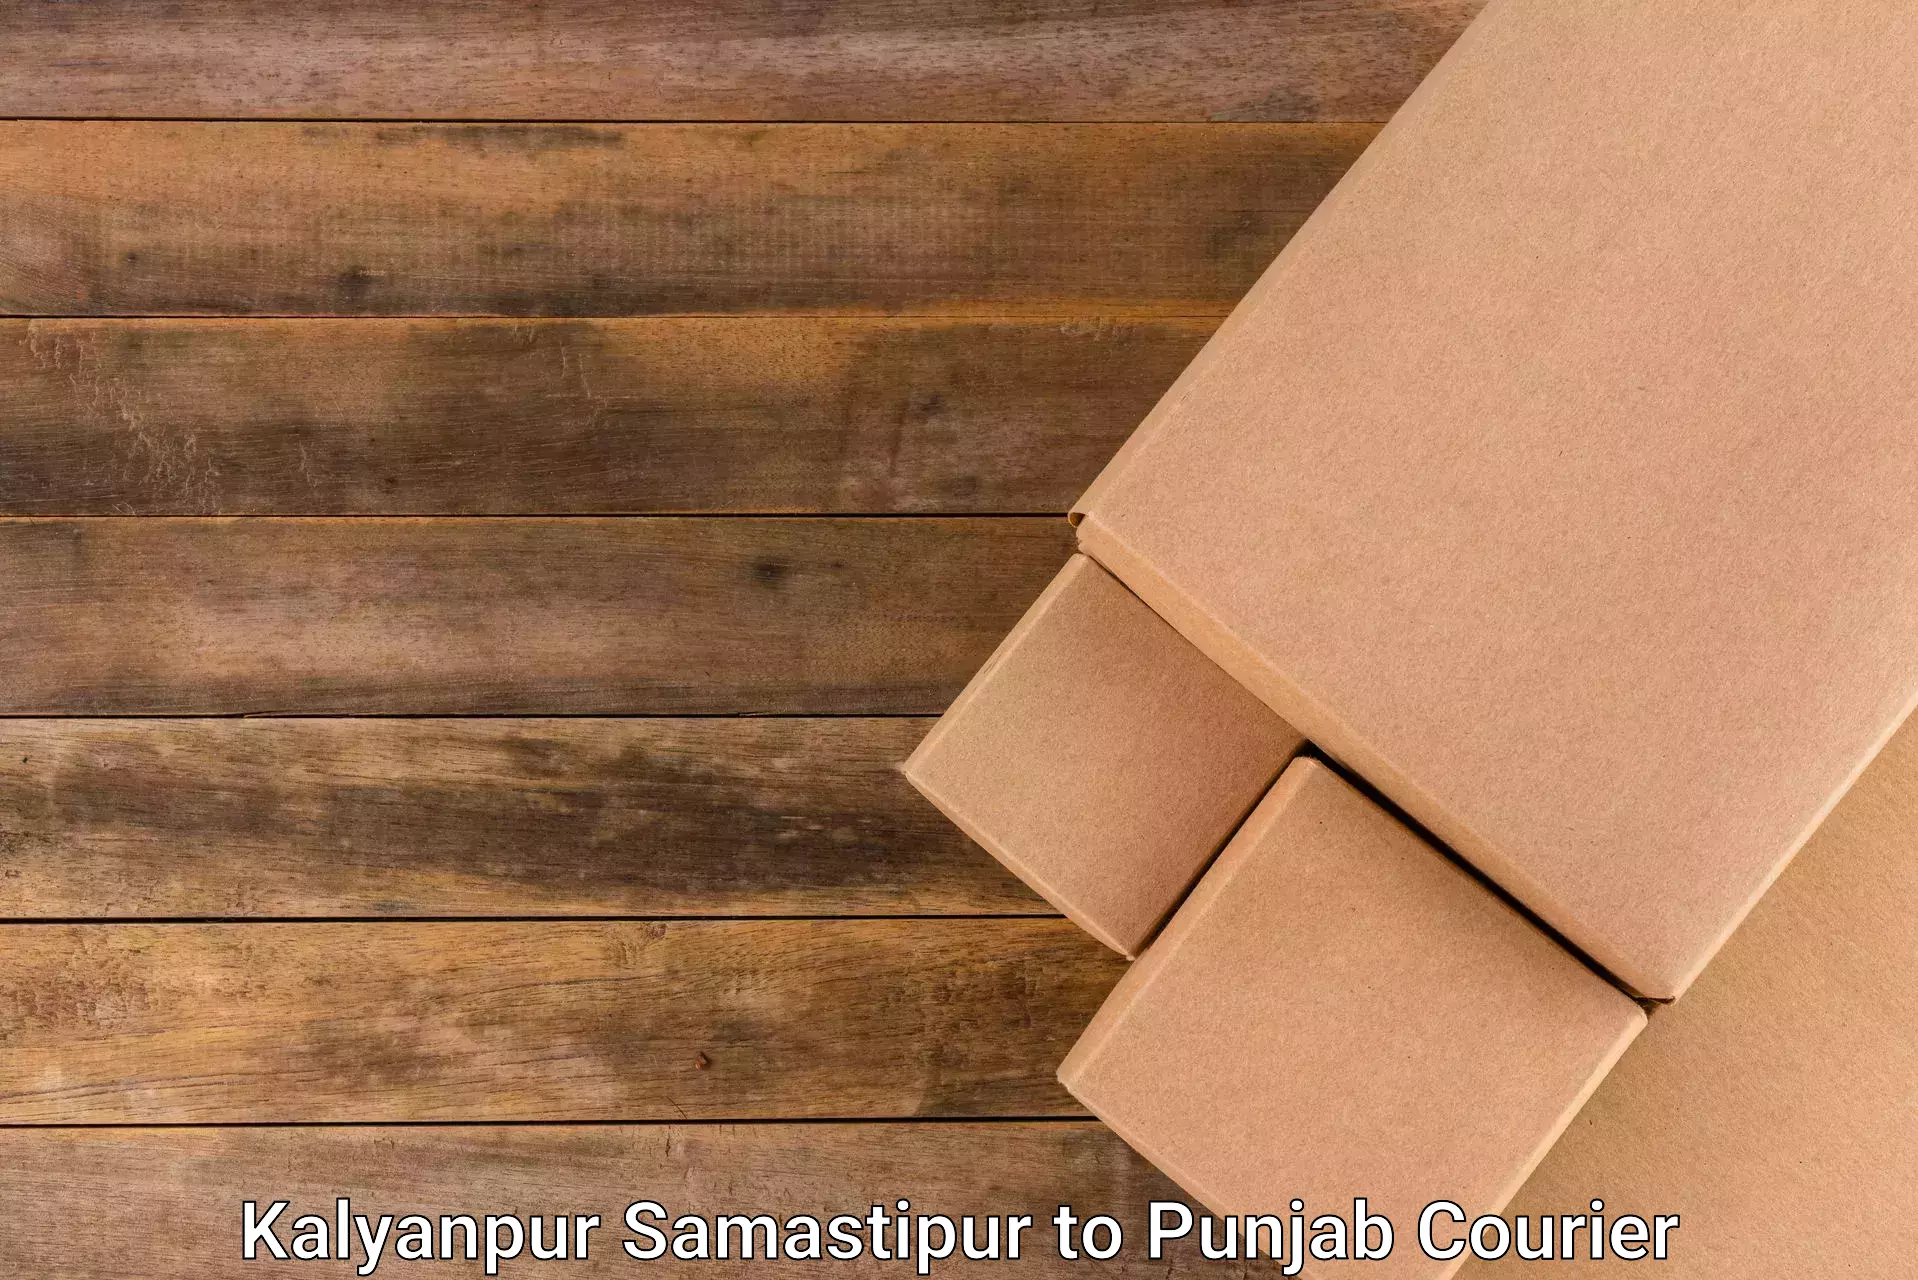 Pharmaceutical courier Kalyanpur Samastipur to Punjab